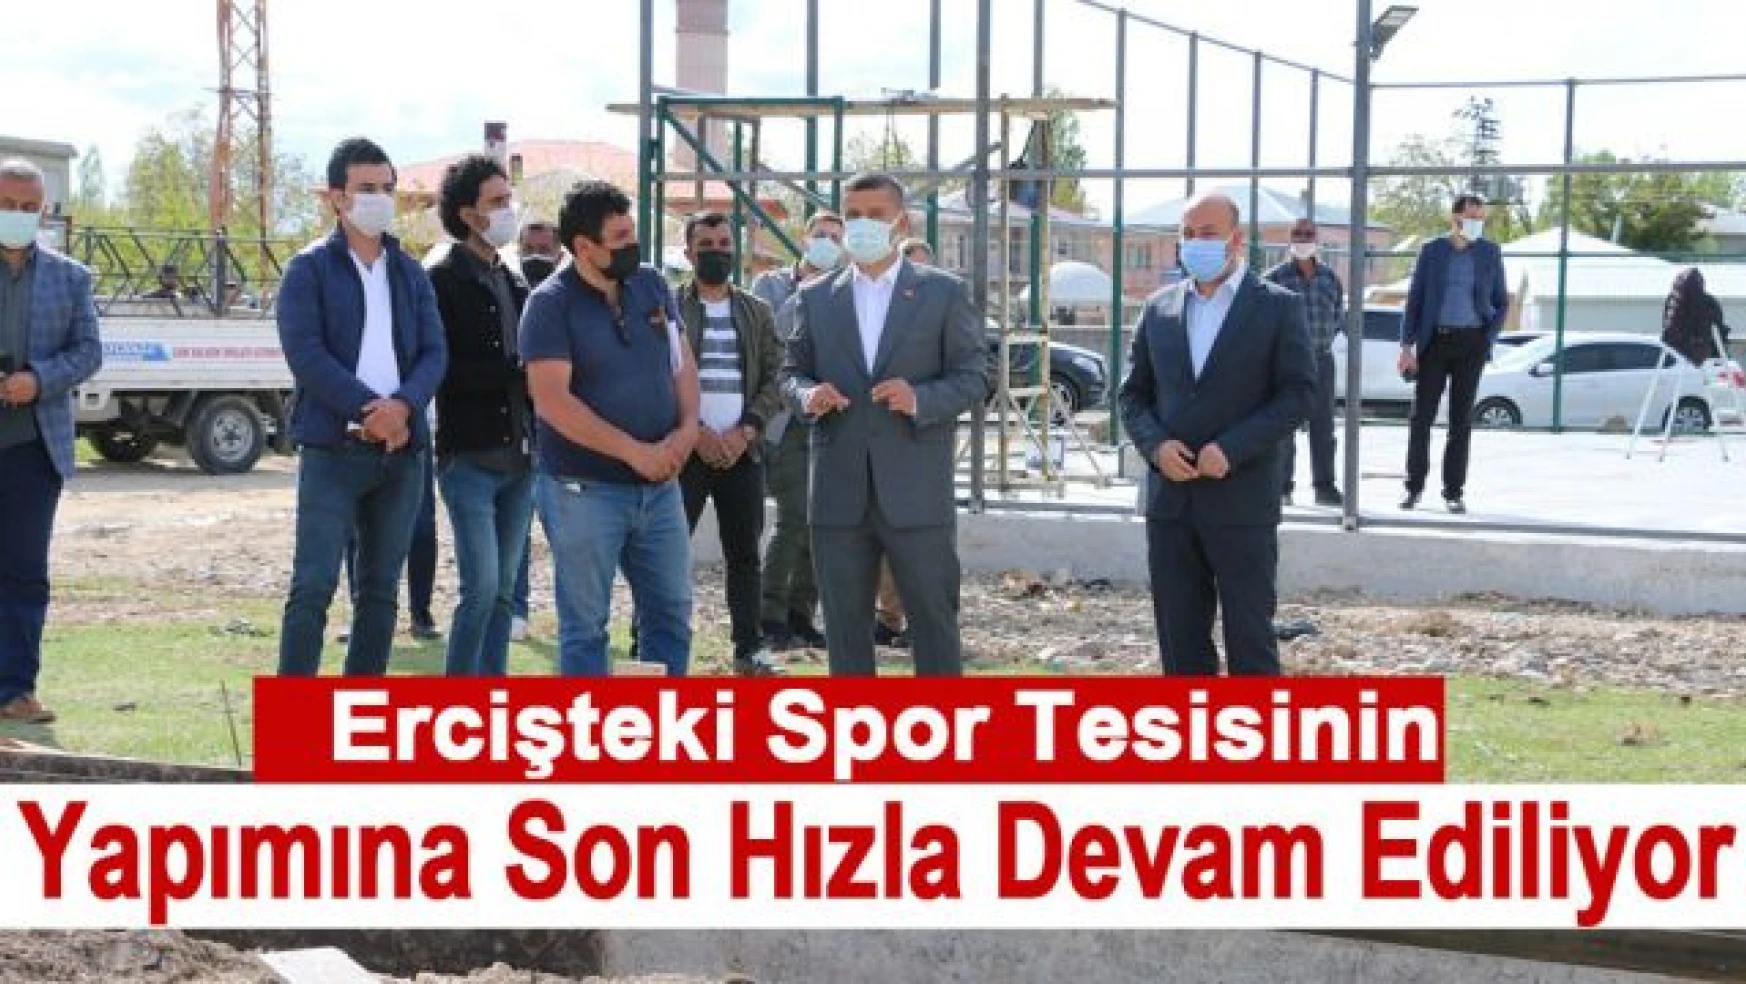 Erciş'te spor tesislerinin yapımı devam ediyor